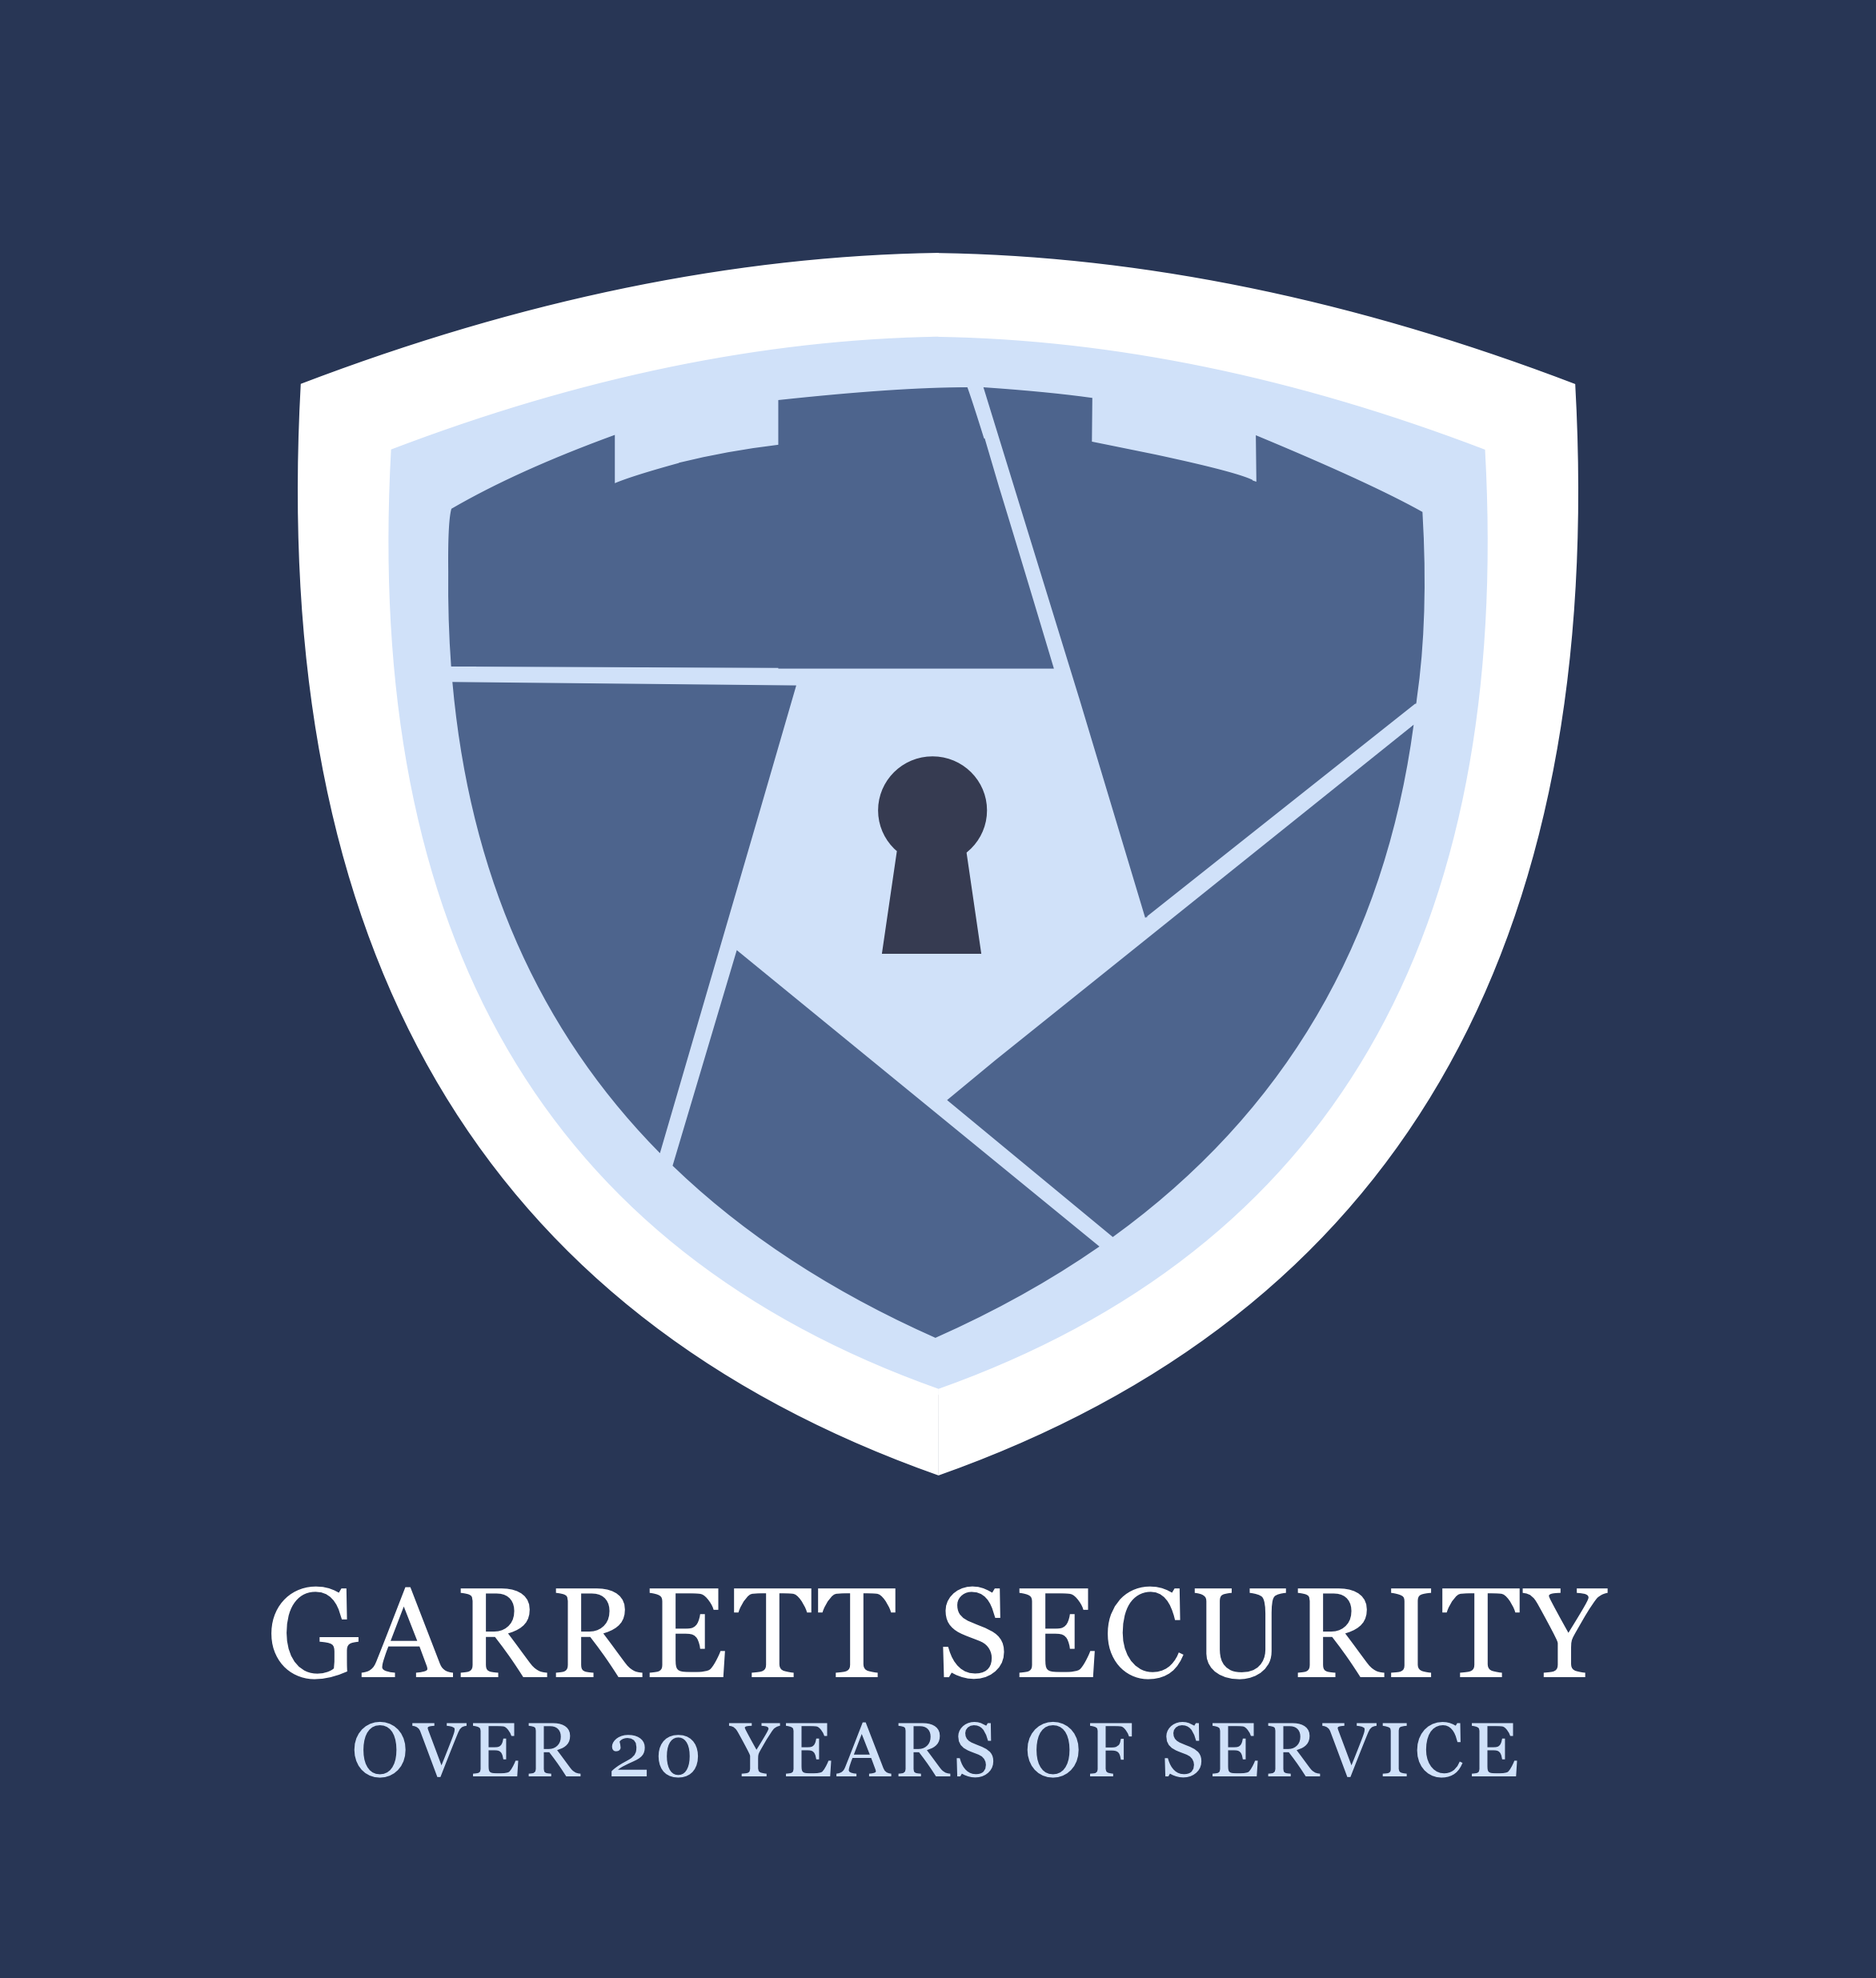 Garrett security logo